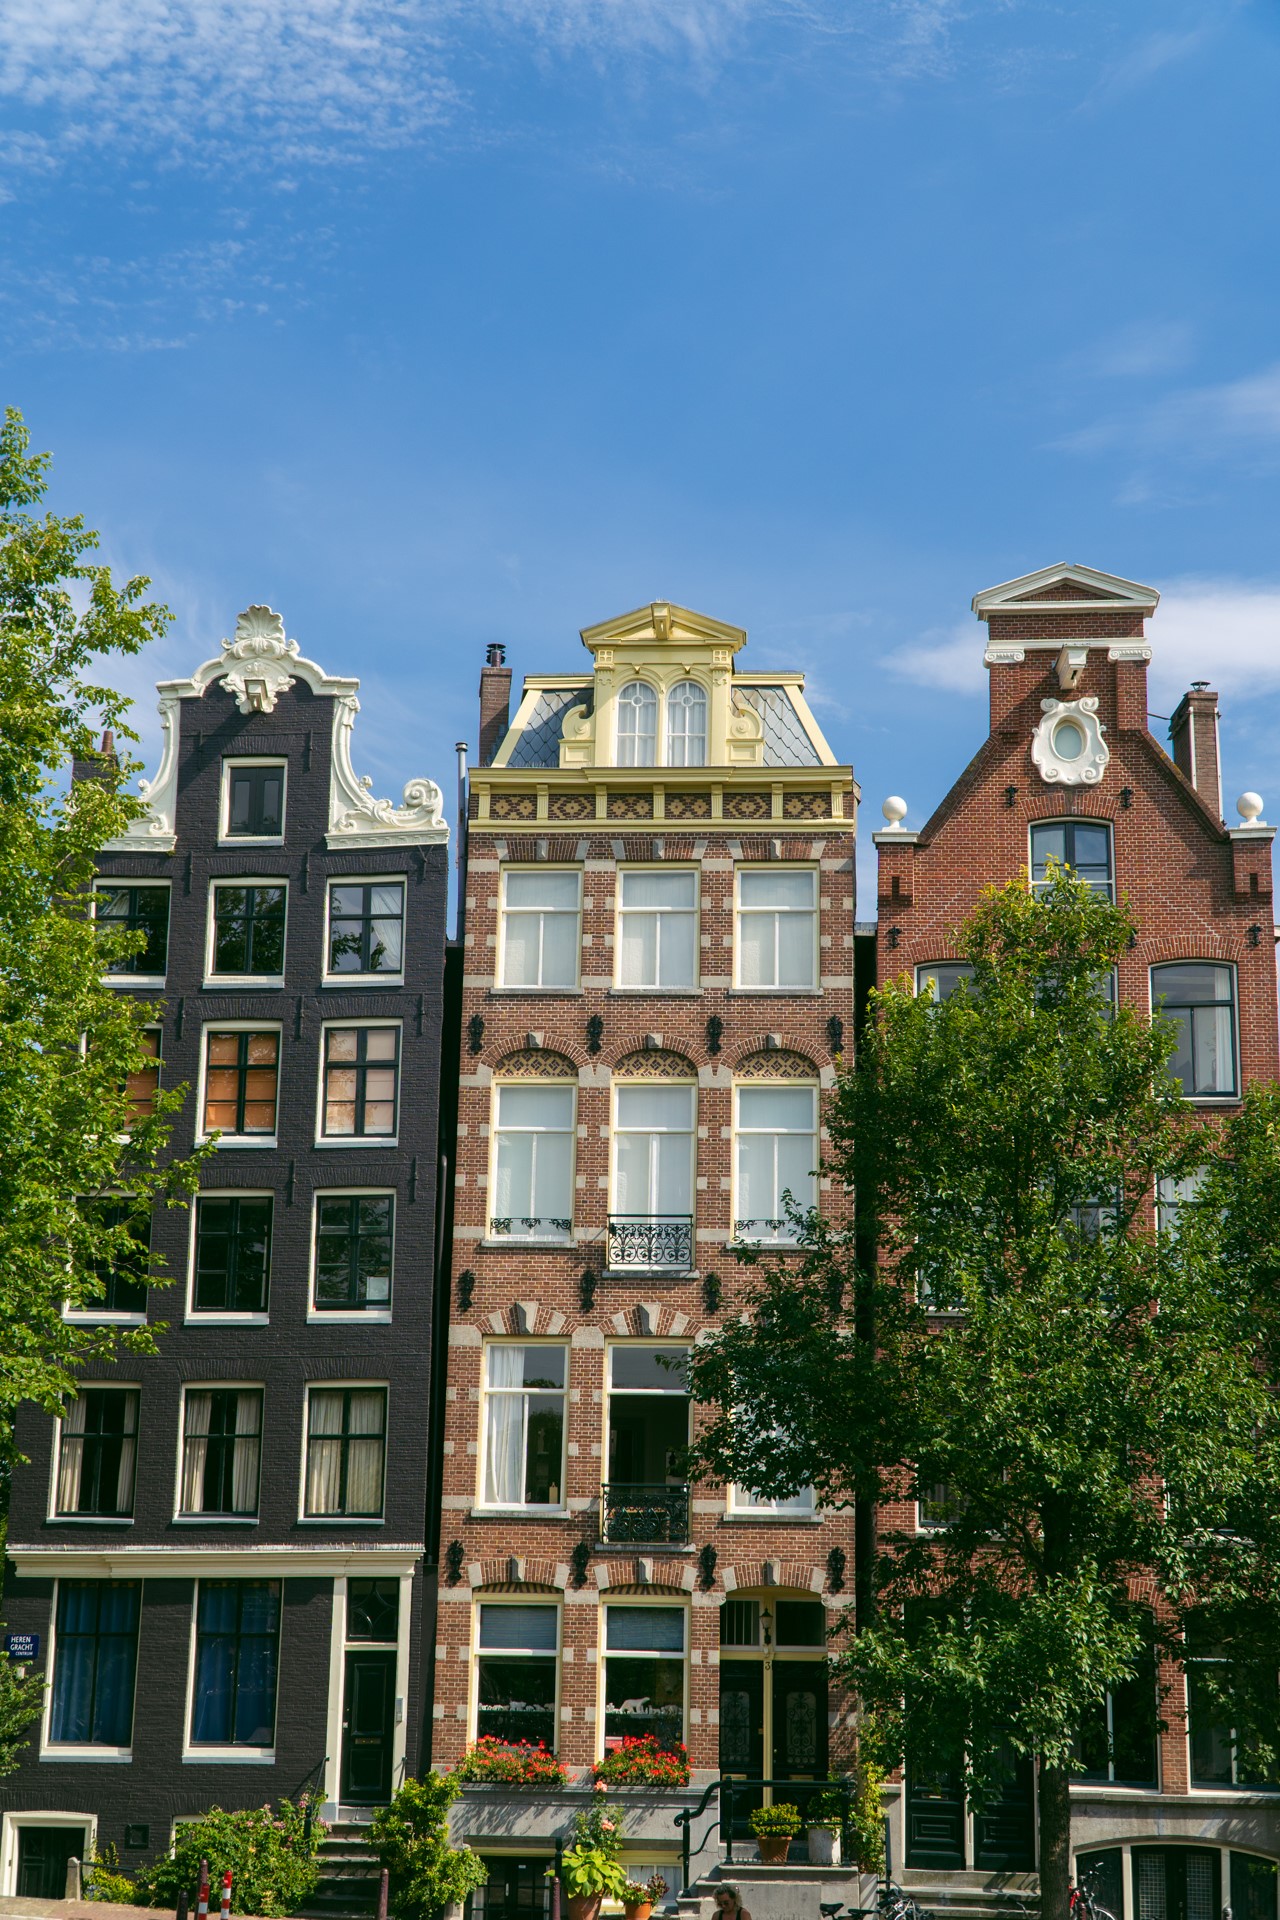 Architektura w Amsterdamie | Co zobaczyć w Amsterdamie?